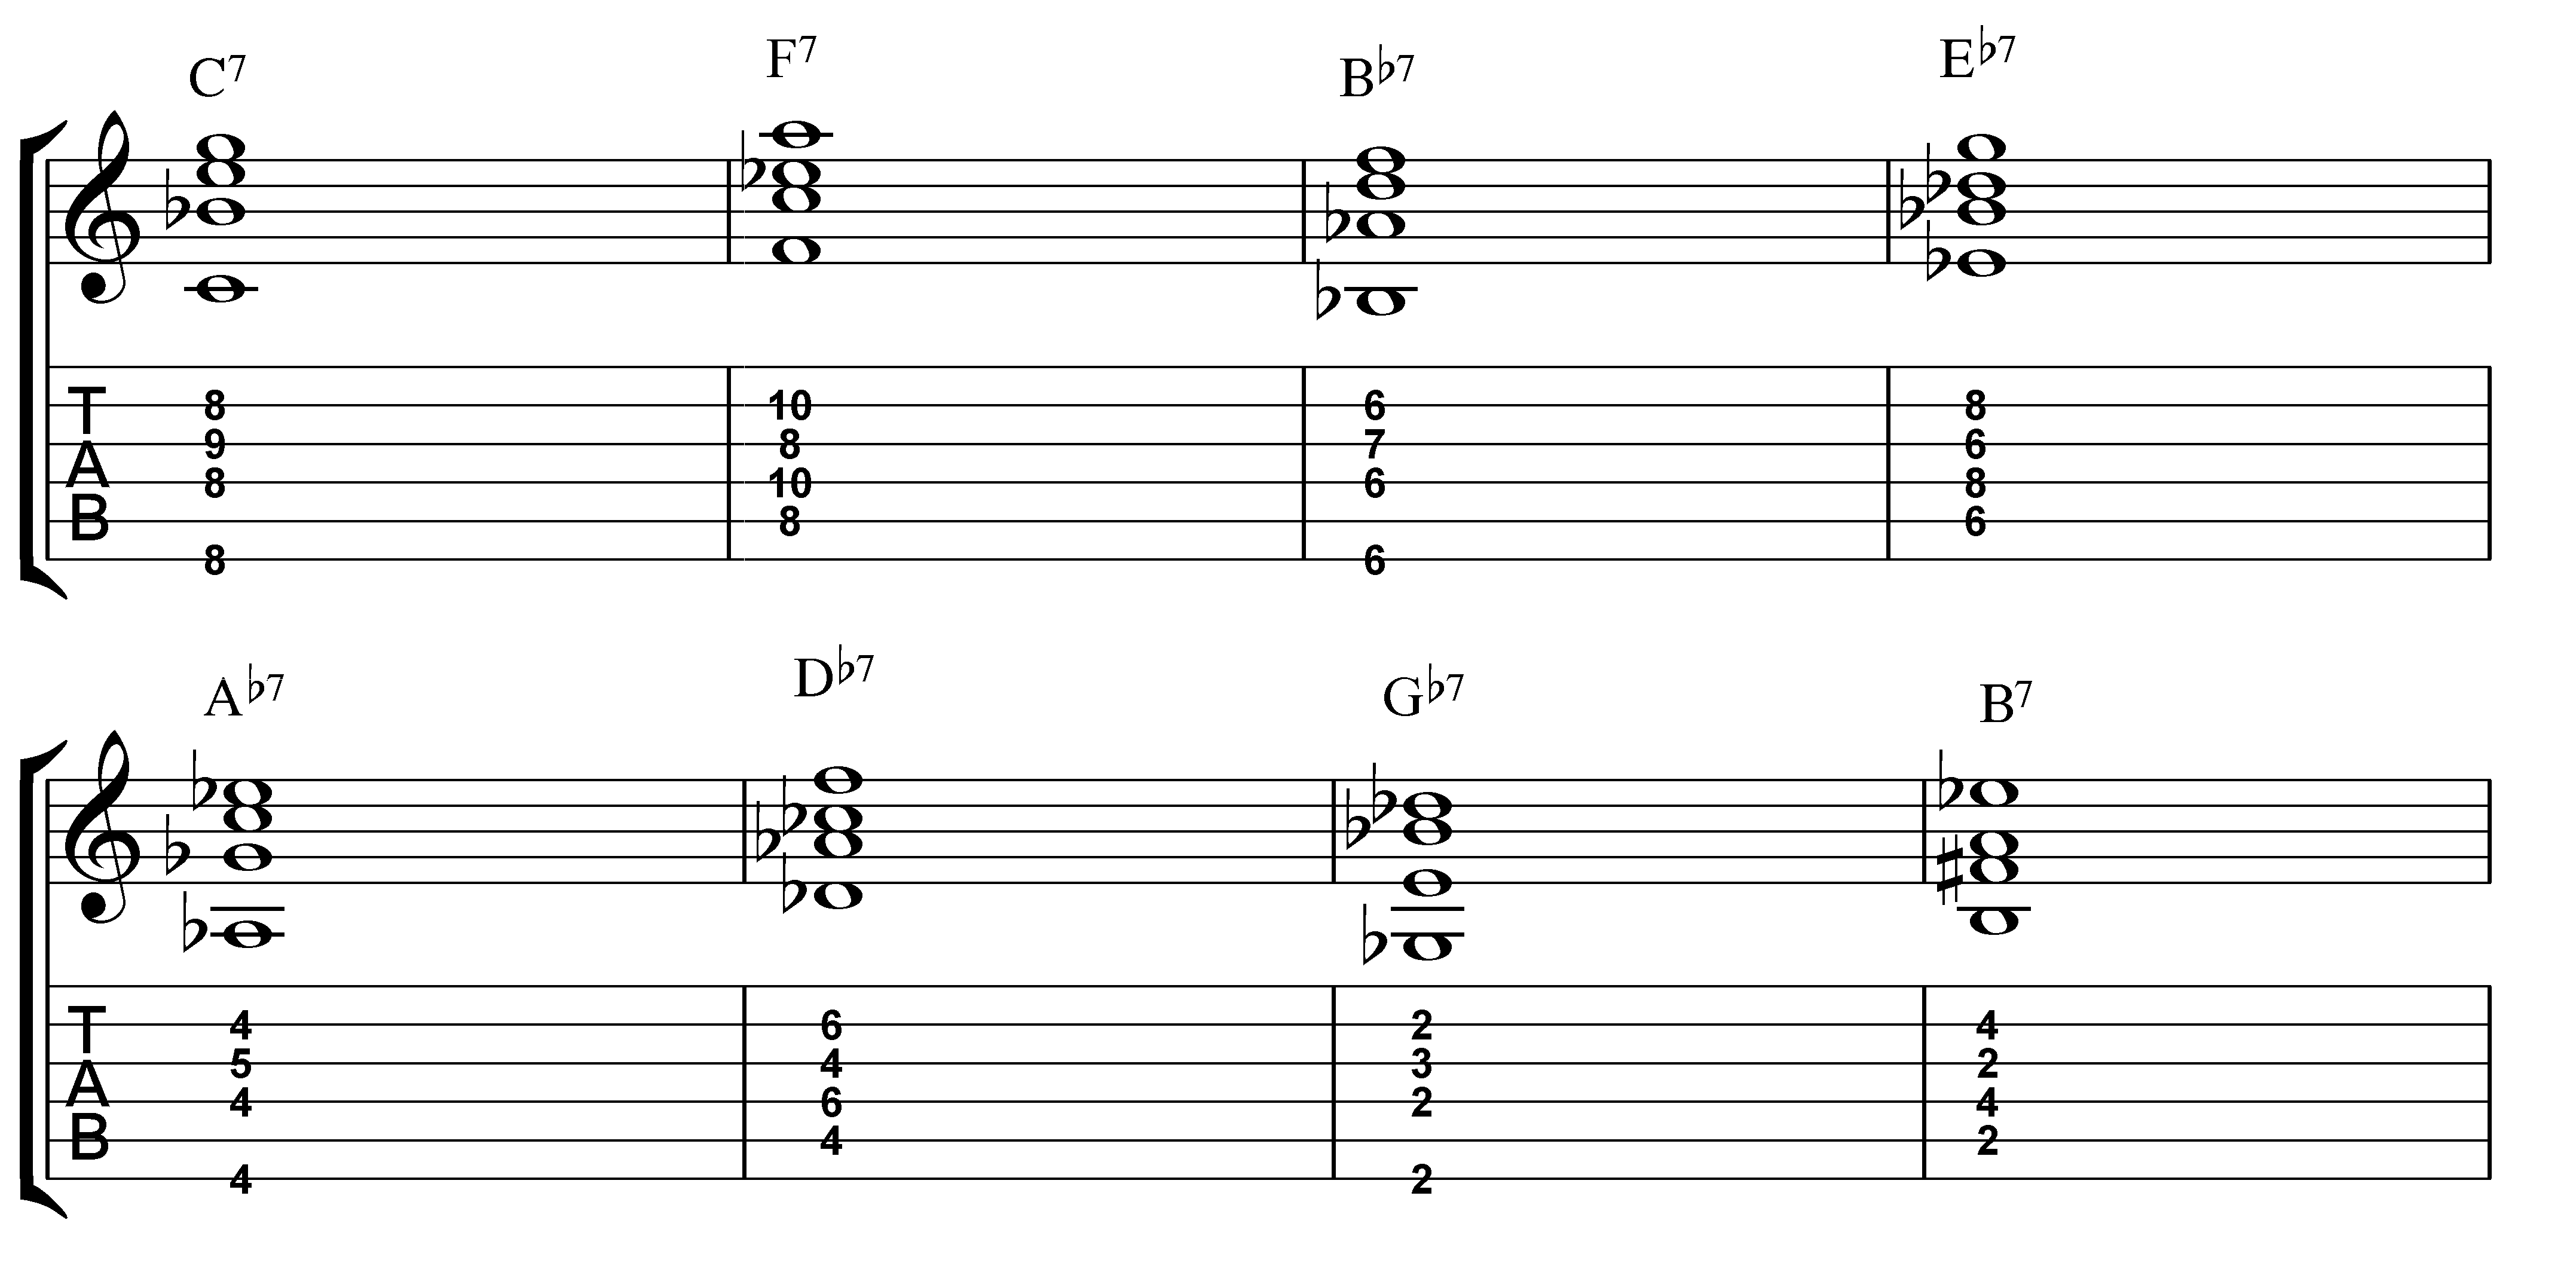 Verwonderlijk How to Practice Jazz Guitar Chords - JamieHolroydGuitar.com VU-31